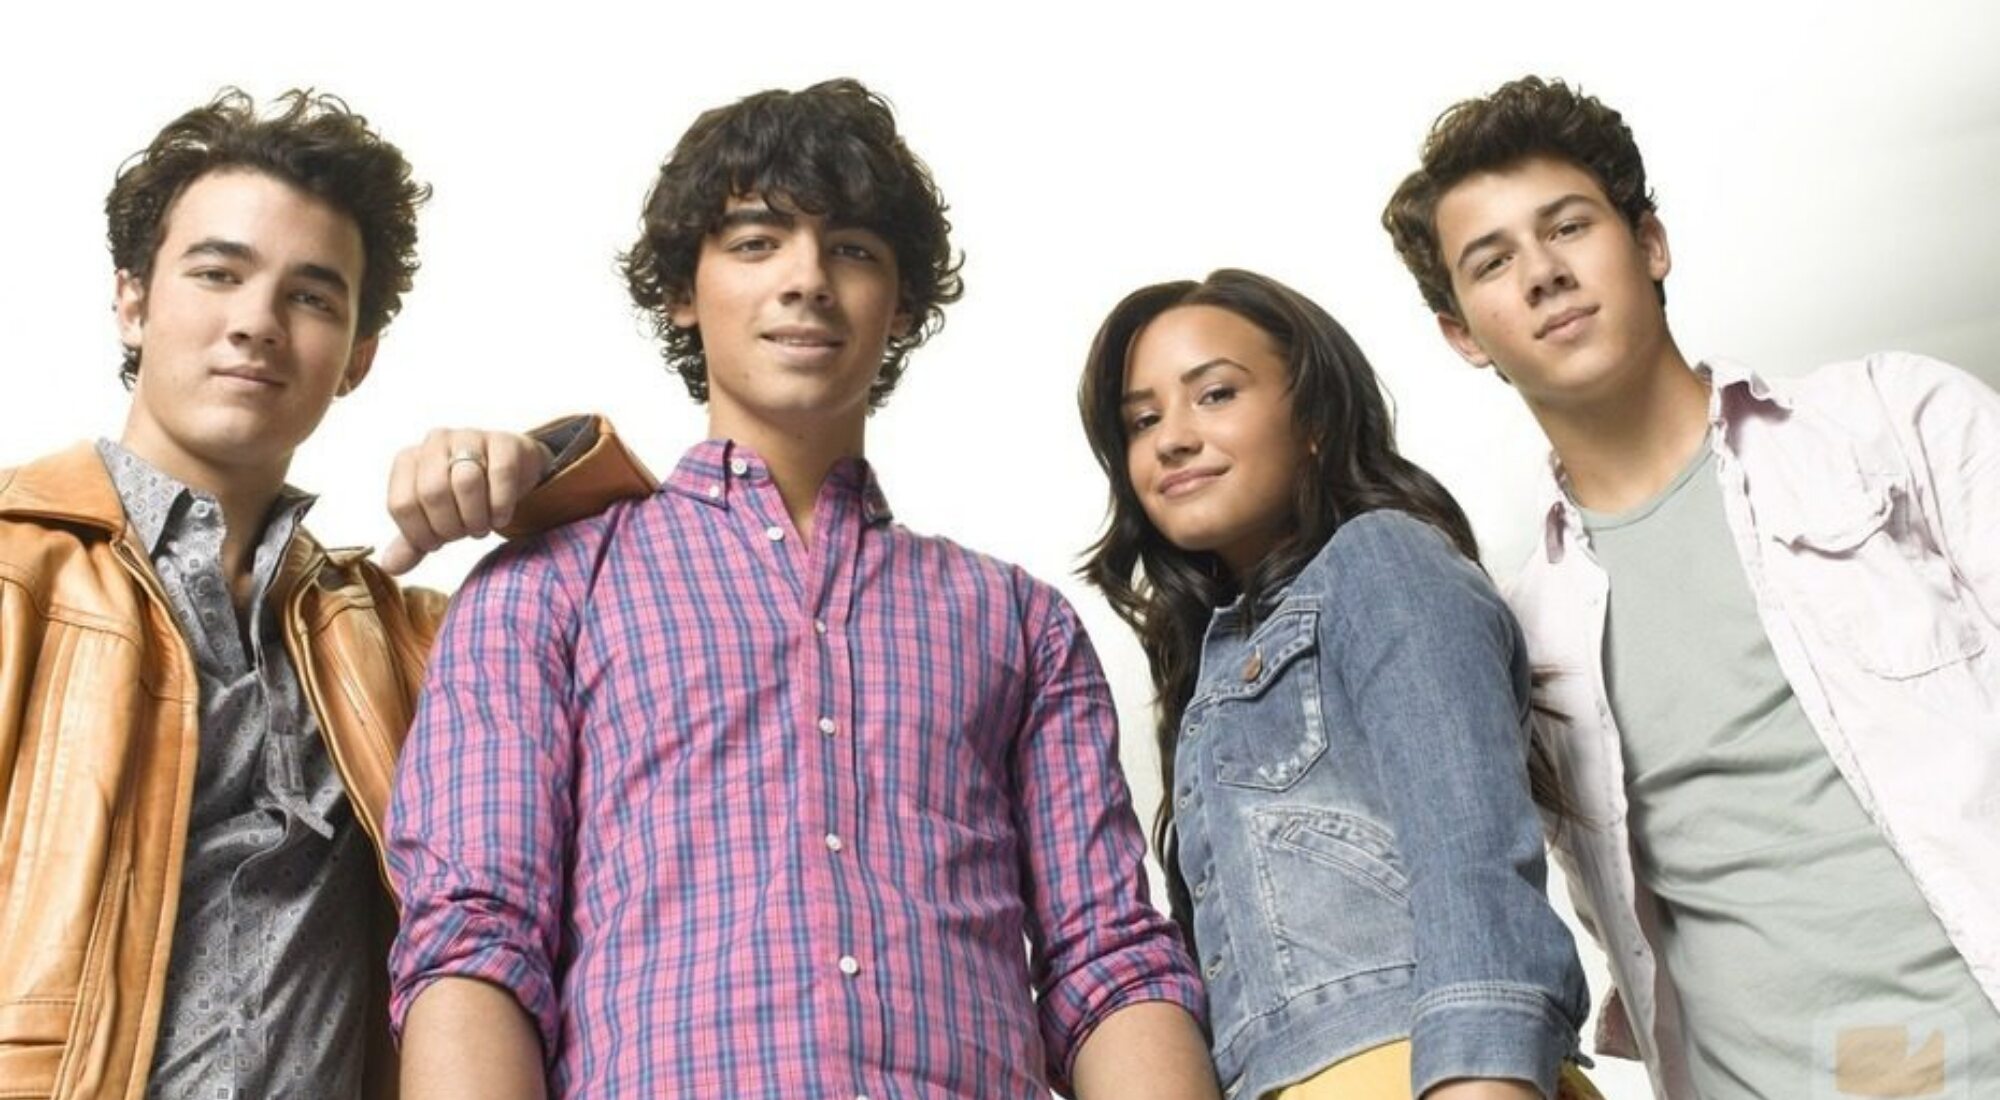  Demi Lovato y Los Jonas Brothers en "Camp Rock 2"